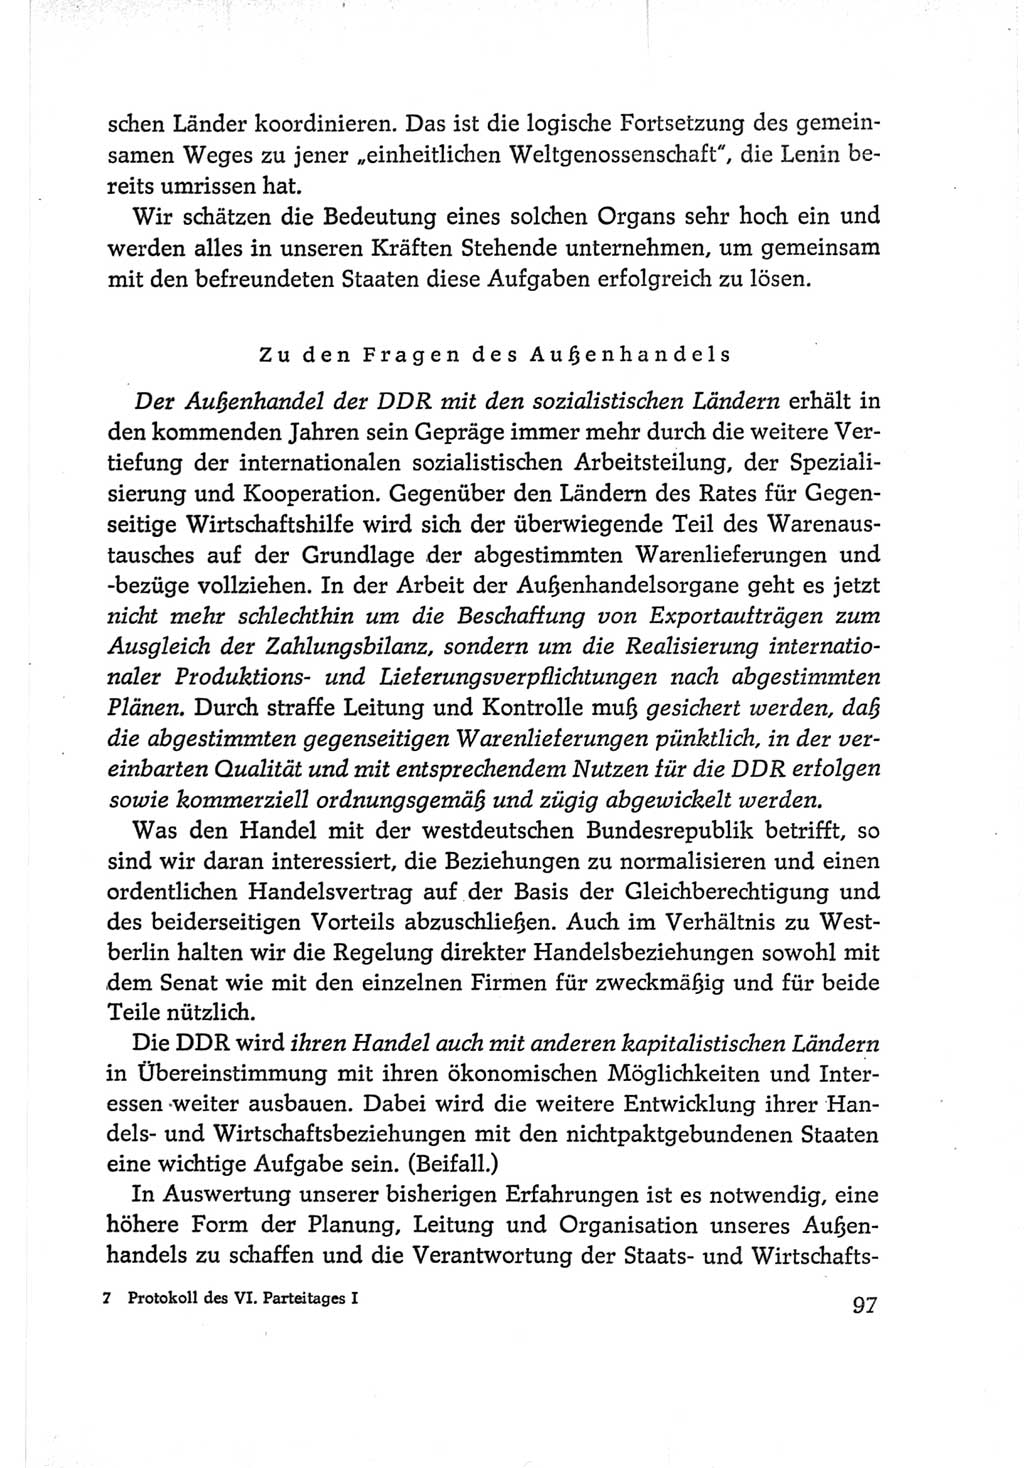 Protokoll der Verhandlungen des Ⅵ. Parteitages der Sozialistischen Einheitspartei Deutschlands (SED) [Deutsche Demokratische Republik (DDR)] 1963, Band Ⅰ, Seite 97 (Prot. Verh. Ⅵ. PT SED DDR 1963, Bd. Ⅰ, S. 97)